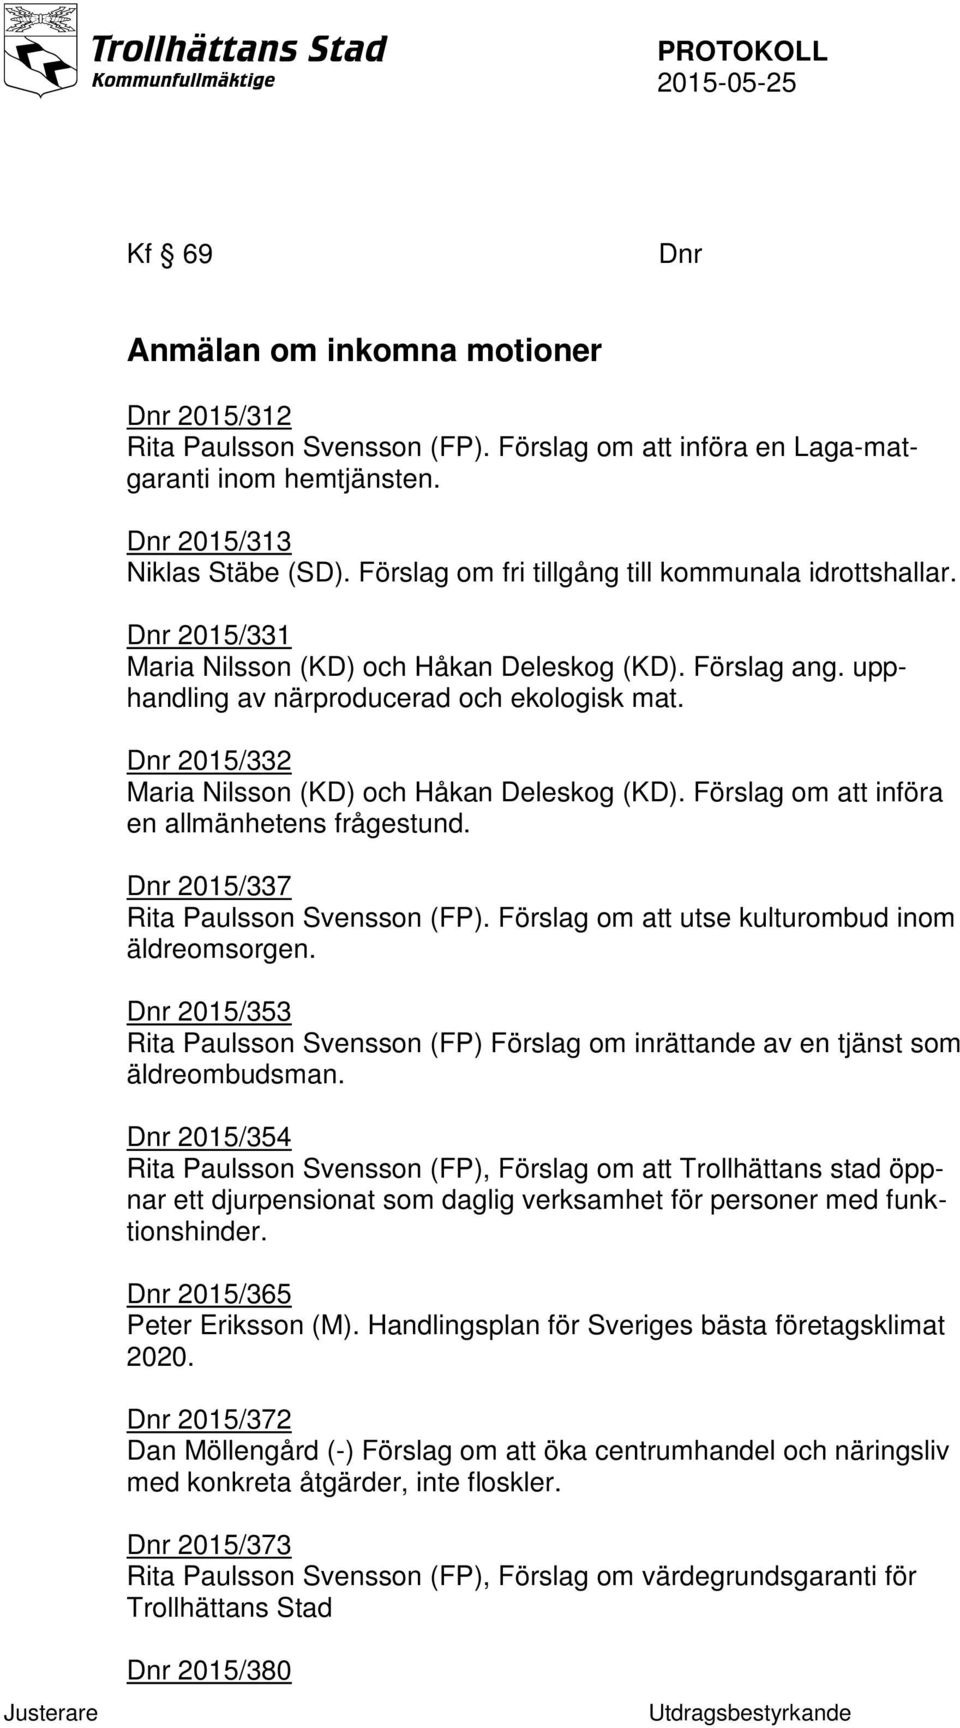 Dnr 2015/332 Maria Nilsson (KD) och Håkan Deleskog (KD). Förslag om att införa en allmänhetens frågestund. Dnr 2015/337 Rita Paulsson Svensson (FP). Förslag om att utse kulturombud inom äldreomsorgen.